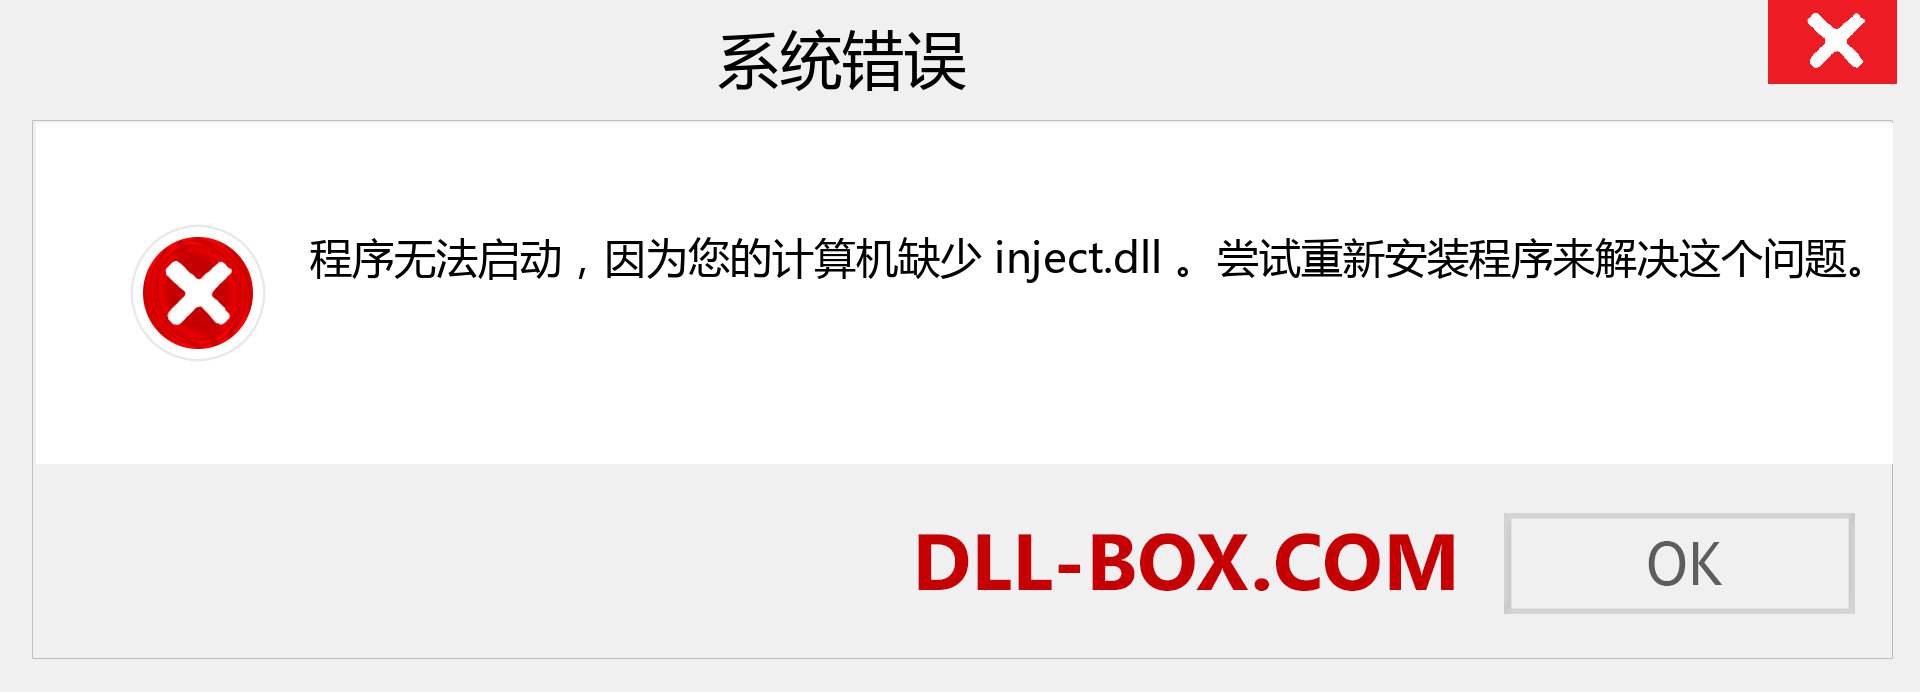 inject.dll 文件丢失？。 适用于 Windows 7、8、10 的下载 - 修复 Windows、照片、图像上的 inject dll 丢失错误